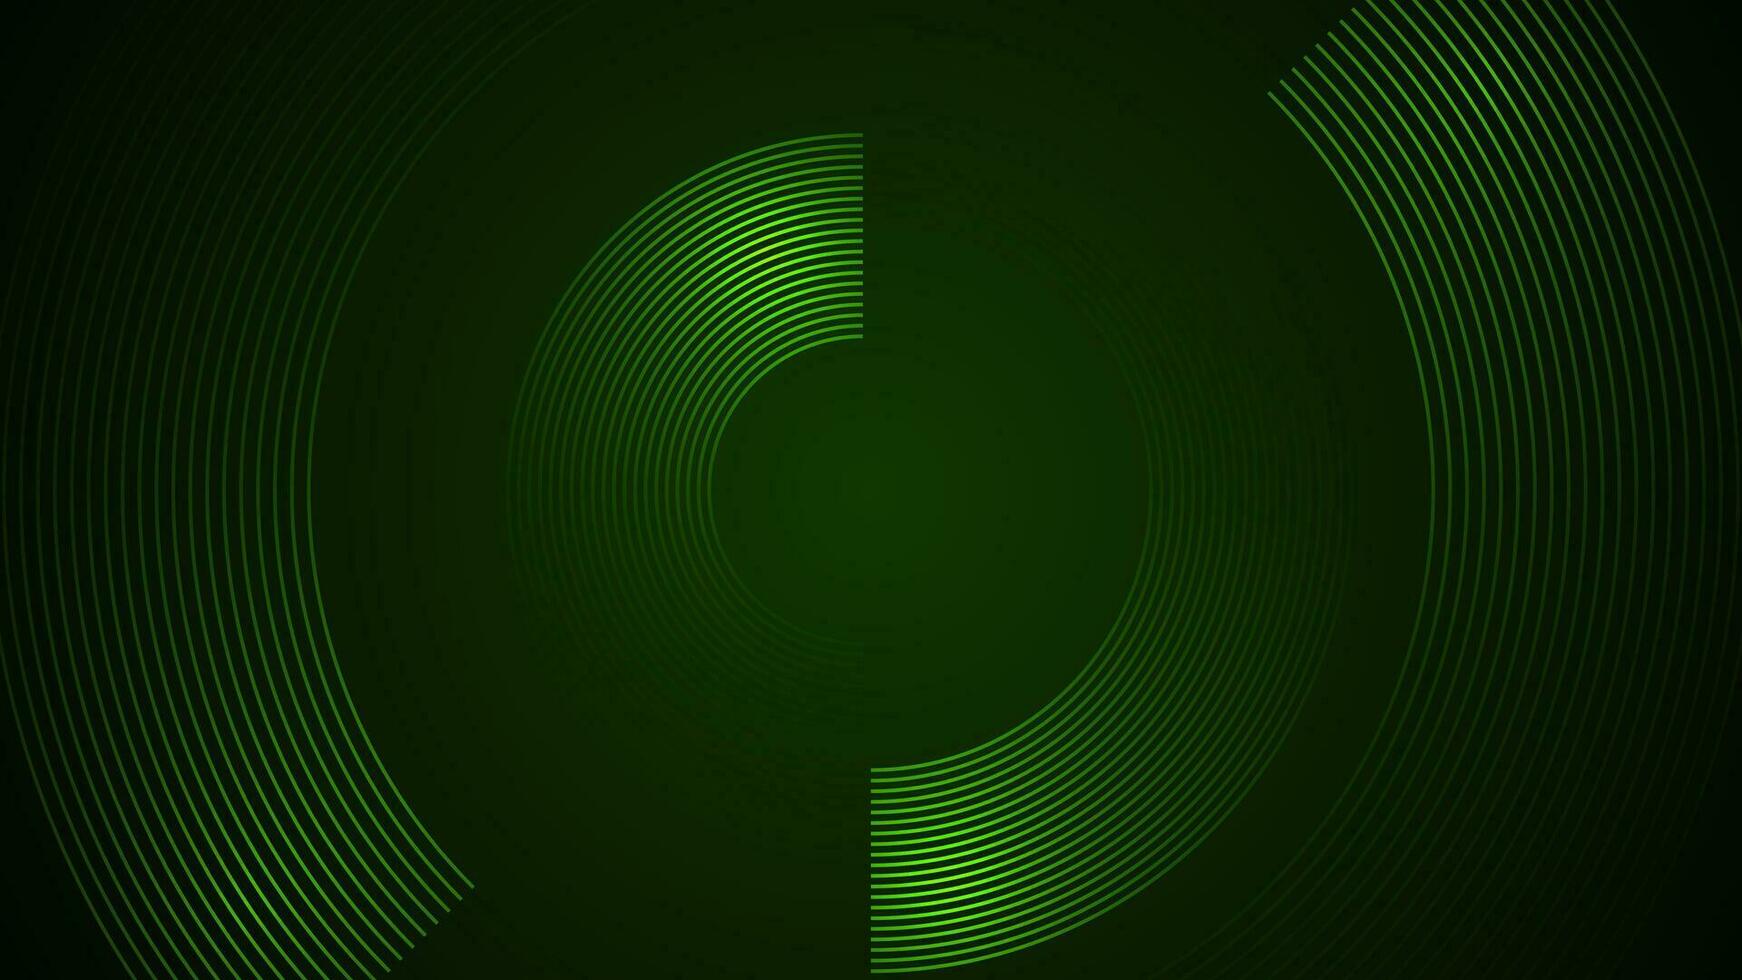 mörk grön enkel abstrakt bakgrund med rader i en böjd stil geometrisk stil som de huvud element. vektor